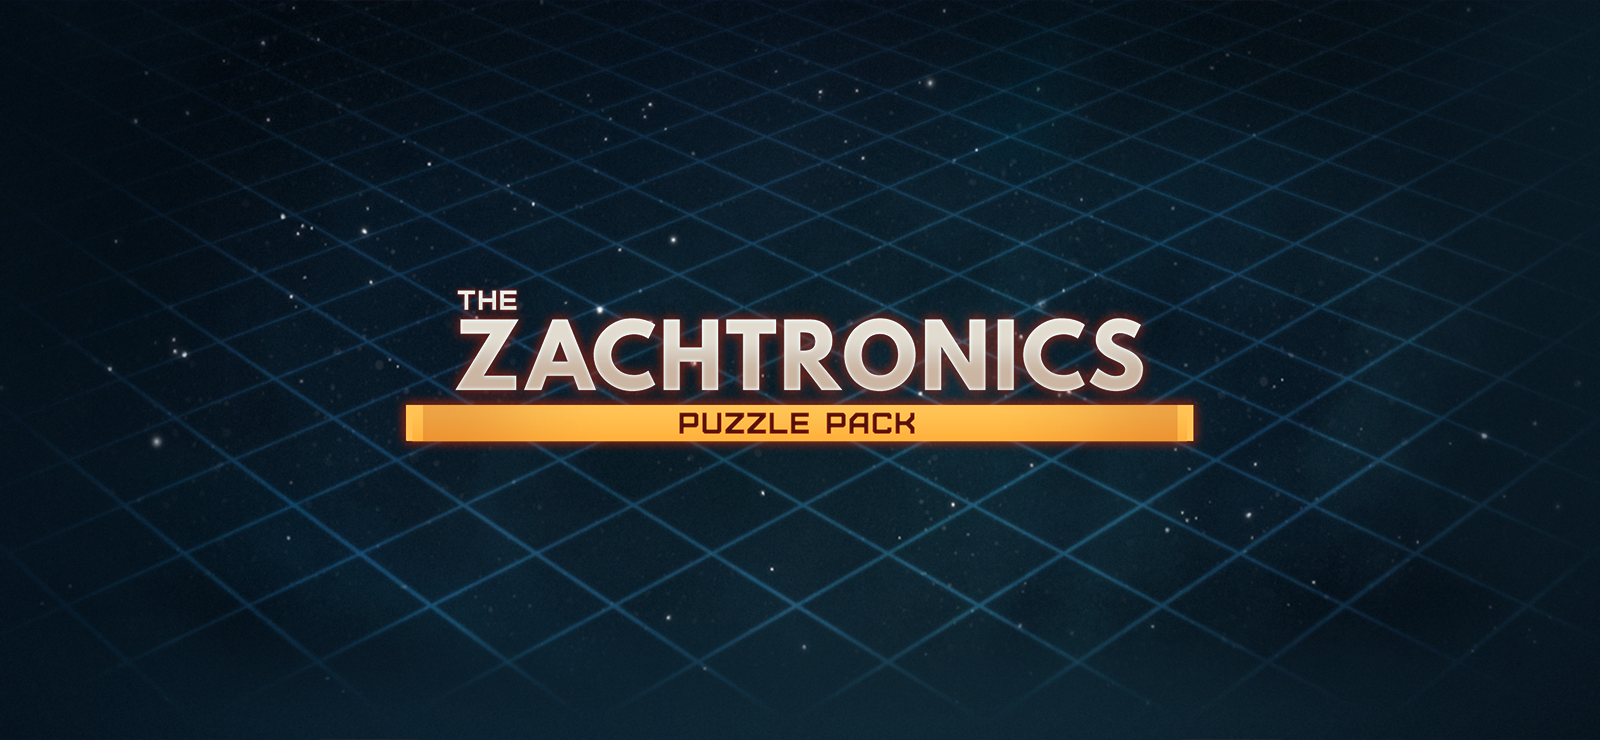 THE ZACHTRONICS PUZZLE PACK